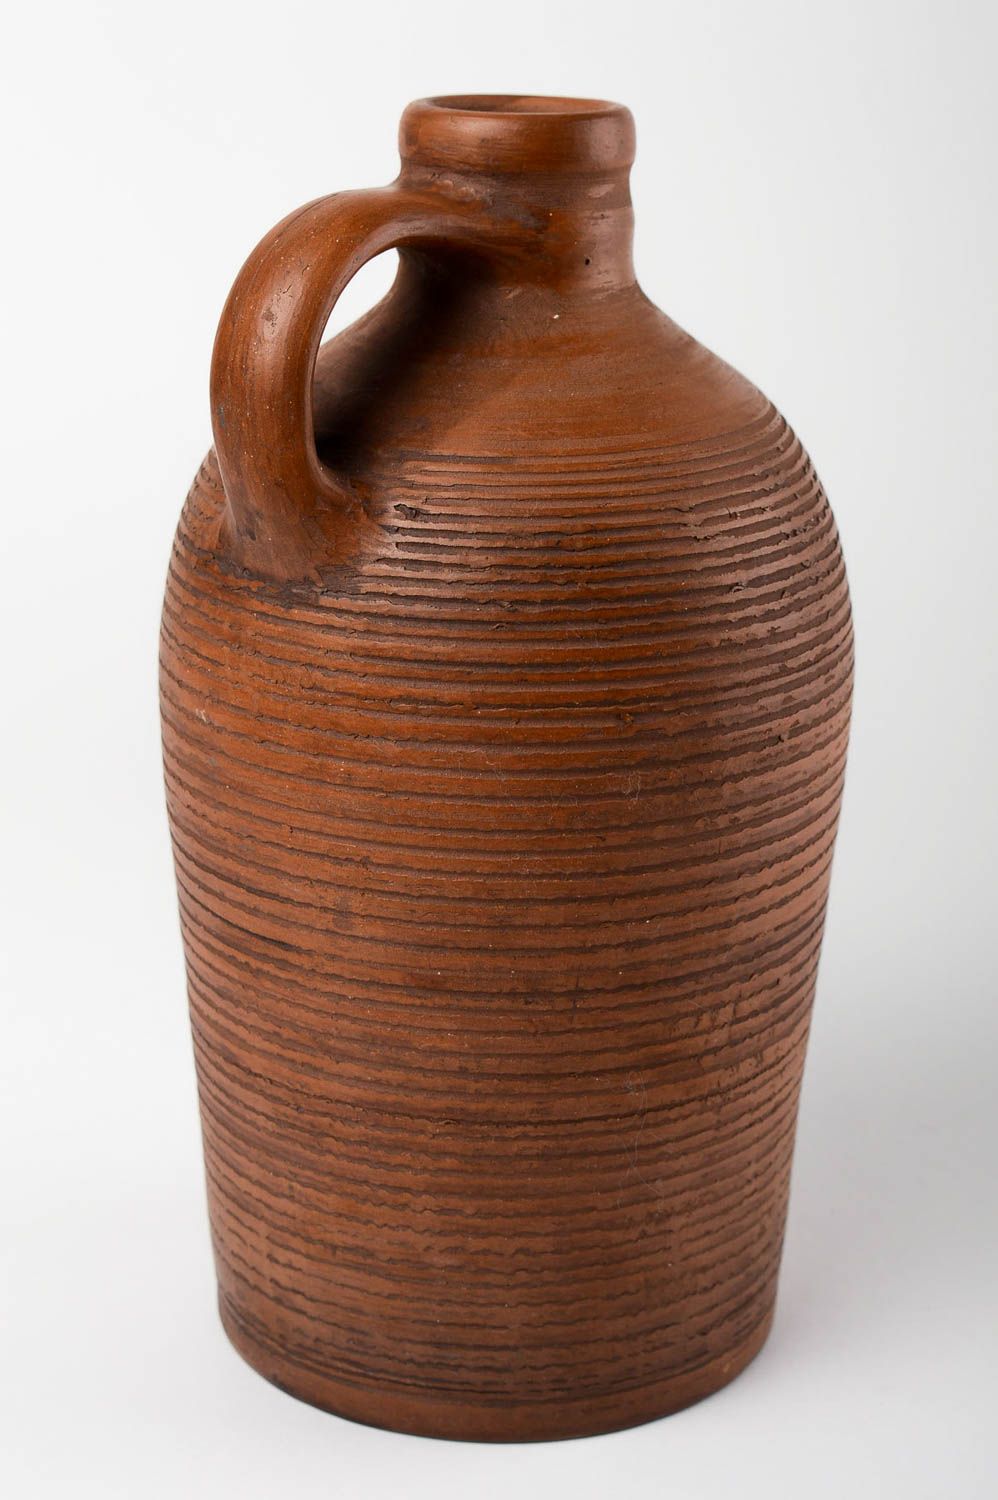 Handmade Flasche aus Ton Haus Deko Geschenk Flasche Keramik Geschirr schön foto 4